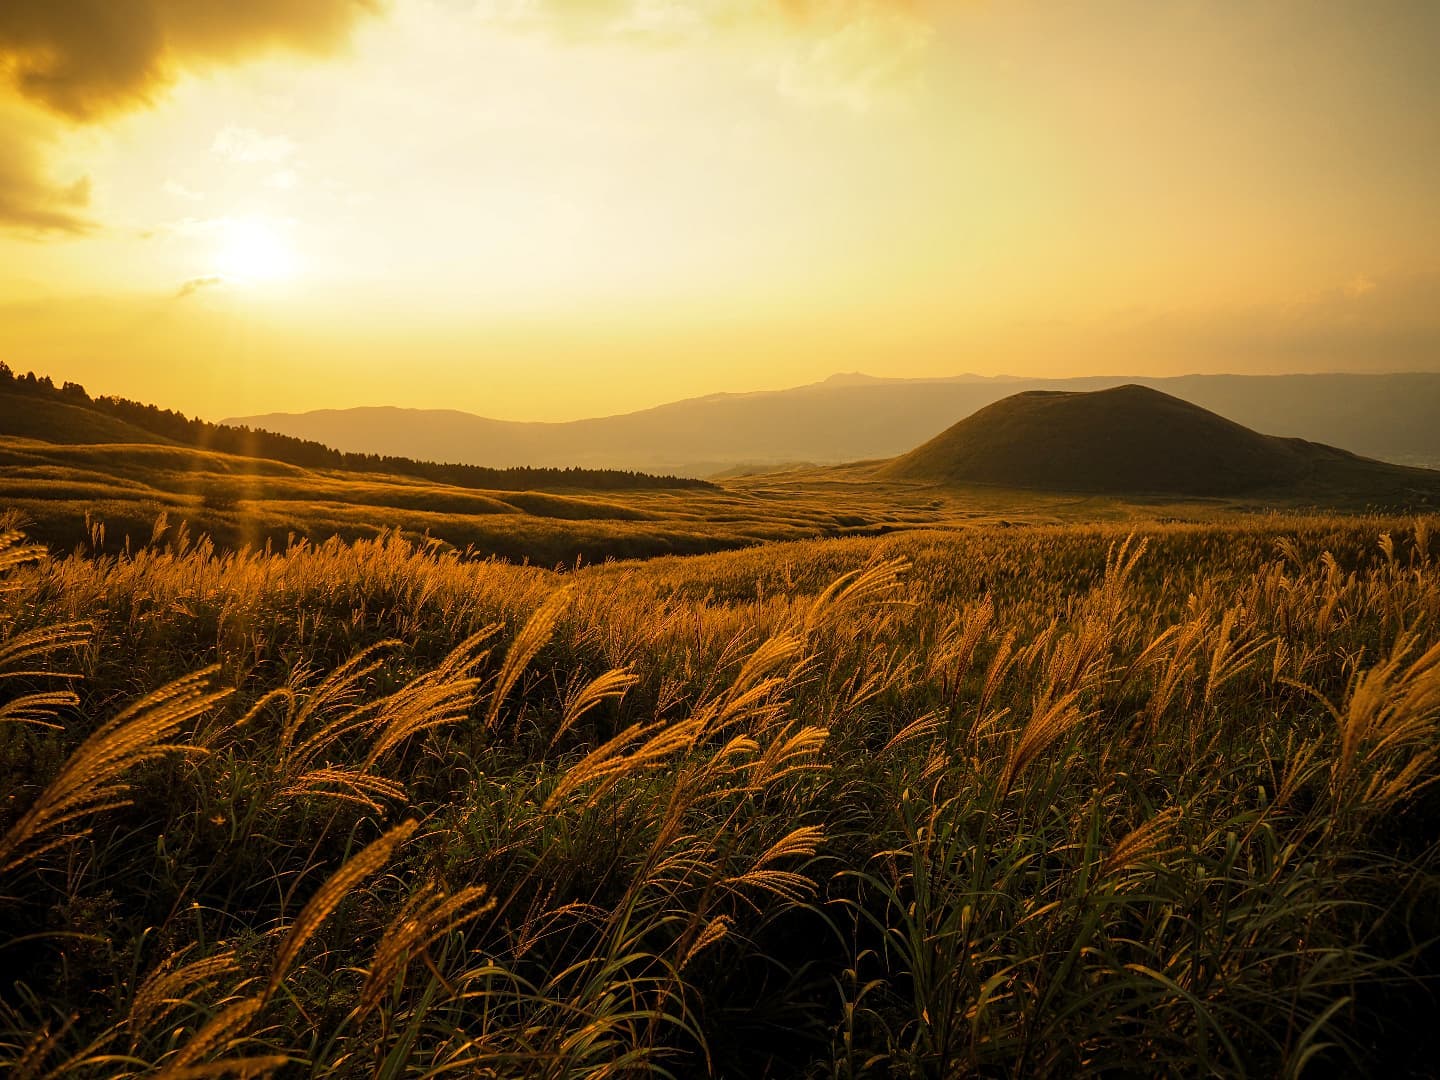 またこの風景が見れる季節阿蘇から黒川温泉までは約1時間黄金色に輝くすすきの風景は、日本経済新聞NIKKEIプラス1（2018年10月13日付）で、阿蘇が「ススキの名所ランキング」の1位に選ばれました。世界有数のカルデラを持つ阿蘇には2万ヘクタール以上の広大な草原が広がっており、秋になるとその大草原一面がススキ野原に。写真は、#阿蘇パノラマライン　からの米塚の風景。風にそよぐススキと　#米塚　当館の夕食時間は■18:00~■18:30~お部屋食となります。■温泉街のお店が閉まるのは17-18:00頃■露天風呂めぐりは21:00まで(20:30最終受付)ご観光の目安にご参考までにPhoto:　@a.k.k.o.3310 若女将撮影↑若女将の撮影した風景写真はこちらからご覧いただけます️■■■■■■■■【投稿キャンペーン特典】■■■■■■■当館のアカウントをフォロー&お写真をご投稿いただいたお客様、また、お写真のご提供をいただいた方には、次回ご来館時に　#若女将特製梅酒　または、#若女将特製梅ジュース　をサービス致します。#和風旅館美里　のハッシュタグを付けてご投稿ください️または、当館でお写真を撮らせていただいたお客様にも特典がございます。ここでしか飲めない人気の美里オリジナルドリンクです。なお撮影させていただいたデータは差し上げておりますどしどしご投稿を宜しくお願いします‍♀️#熊本再発見の旅　はじまりました️#和風旅館美里#黒川温泉#観光地#熊本県#温泉#南小国町#美里オリジナル湯あかり#熊本再発見の旅#熊本観光#旅館#otonatabi_japan#tabiness#my_aso#visitjapan#onsenislandkyushu#rakutentravel#onsenislandkyushu#jalan_travel#joytb#kumamon_ken#びゅうたび#思いをつなぐフォト#風景写真#阿蘇#阿蘇ジオパーク#熊本グルメ